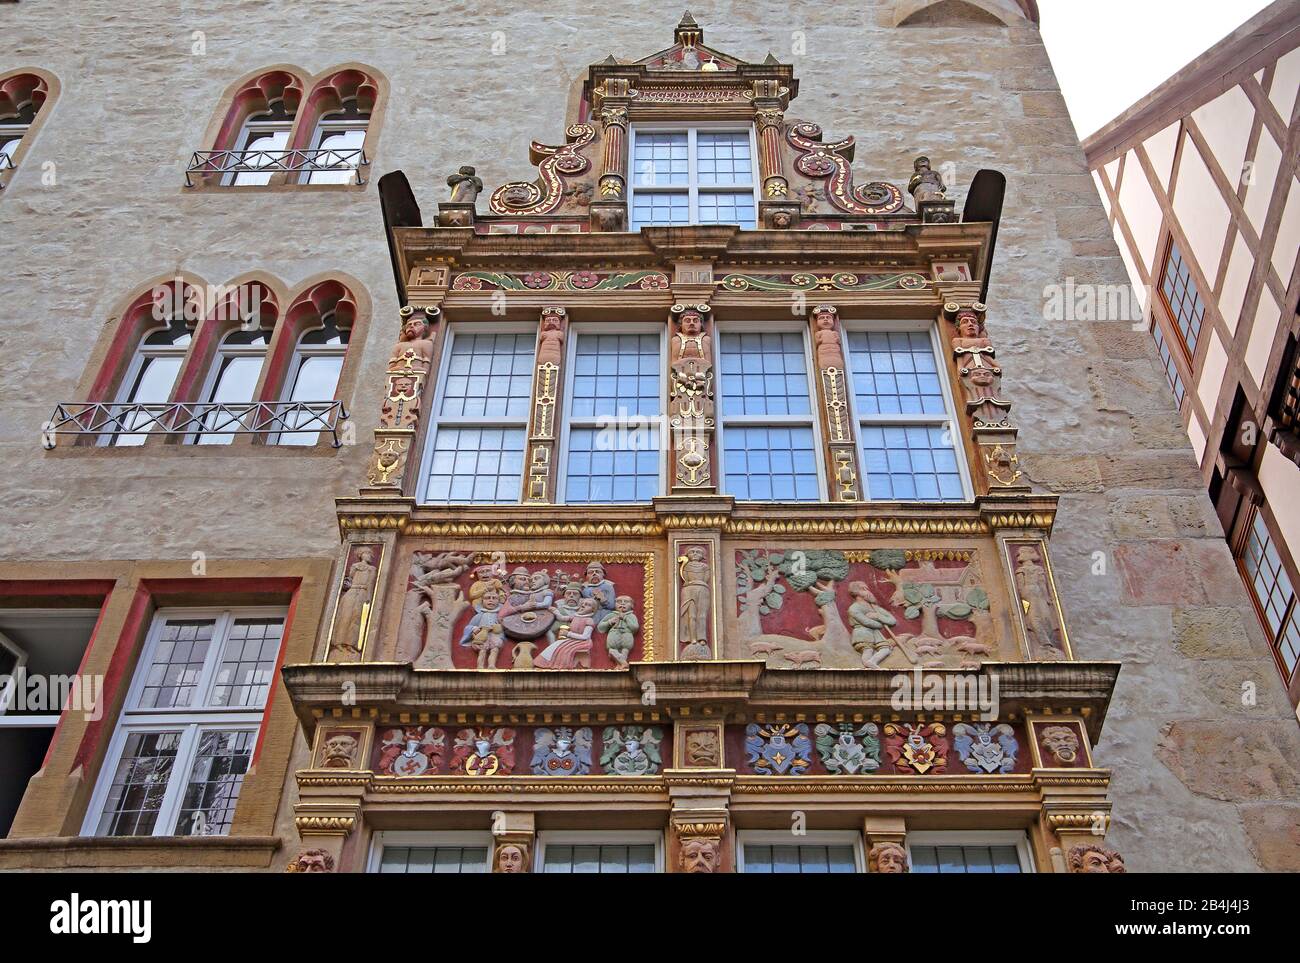 Façade avec baie vitrée ornée de la maison du temple sur la Marktplatz, Hildesheim, Basse-Saxe, Allemagne Banque D'Images